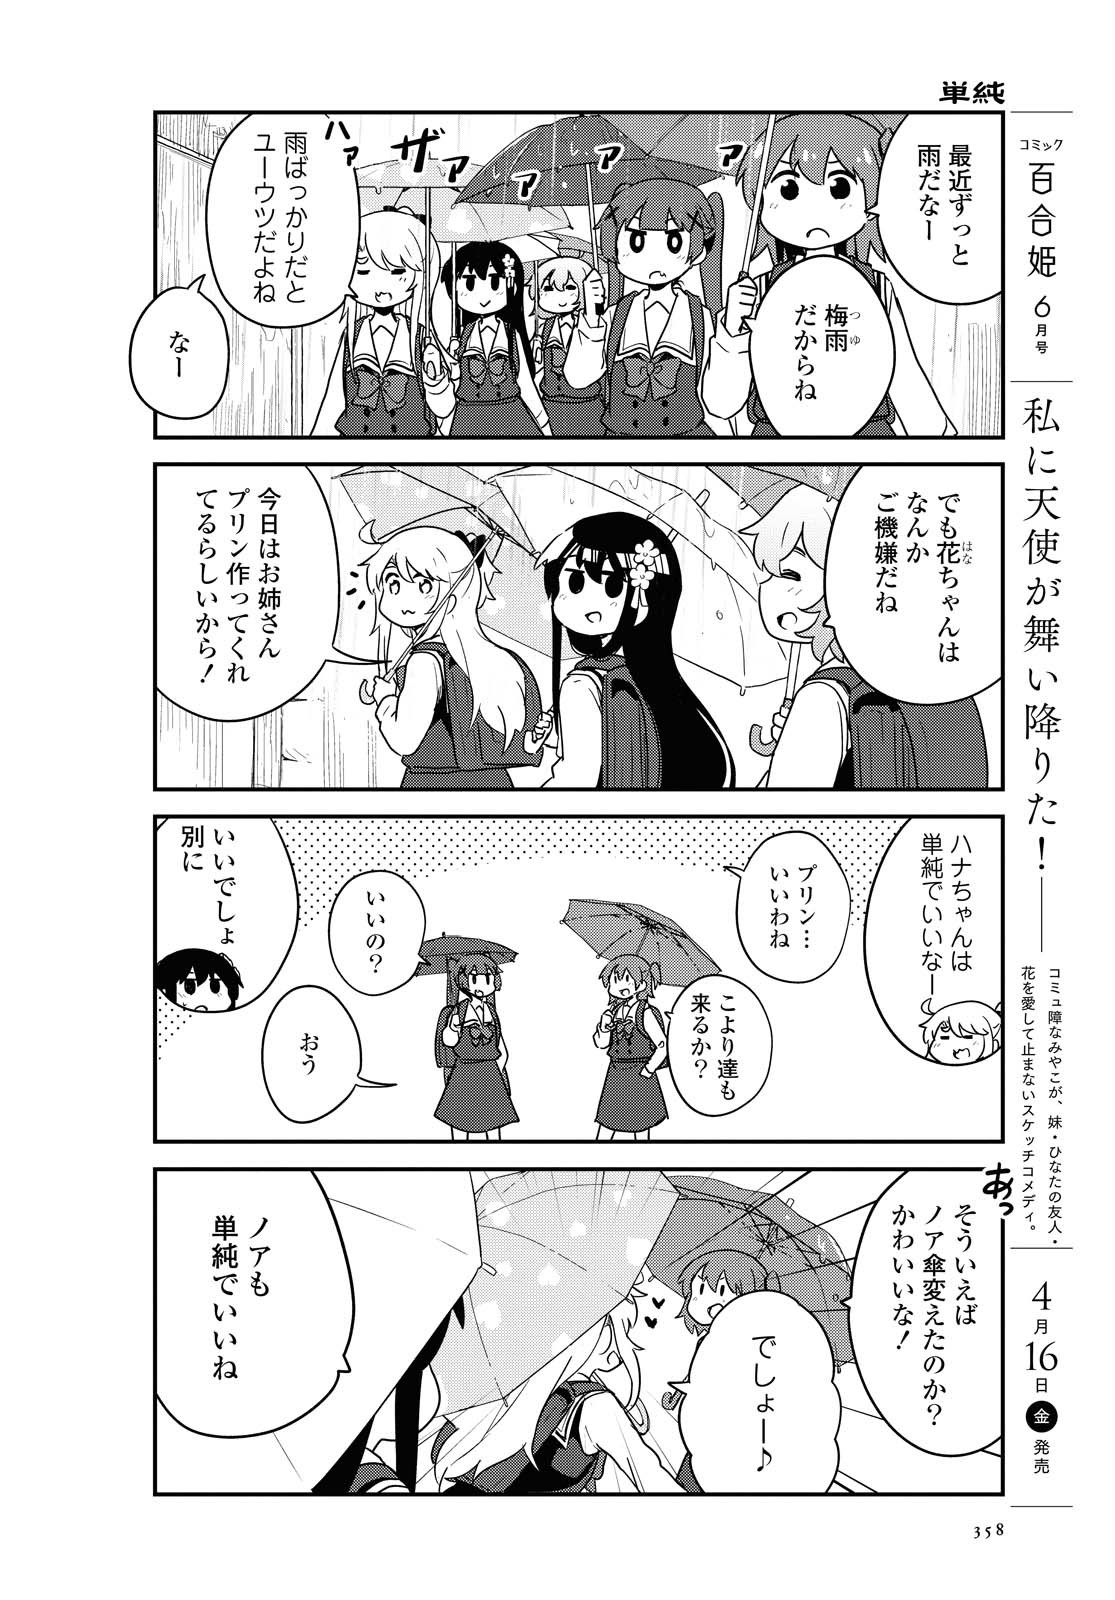 Watashi ni Tenshi ga Maiorita! - Chapter 79 - Page 2